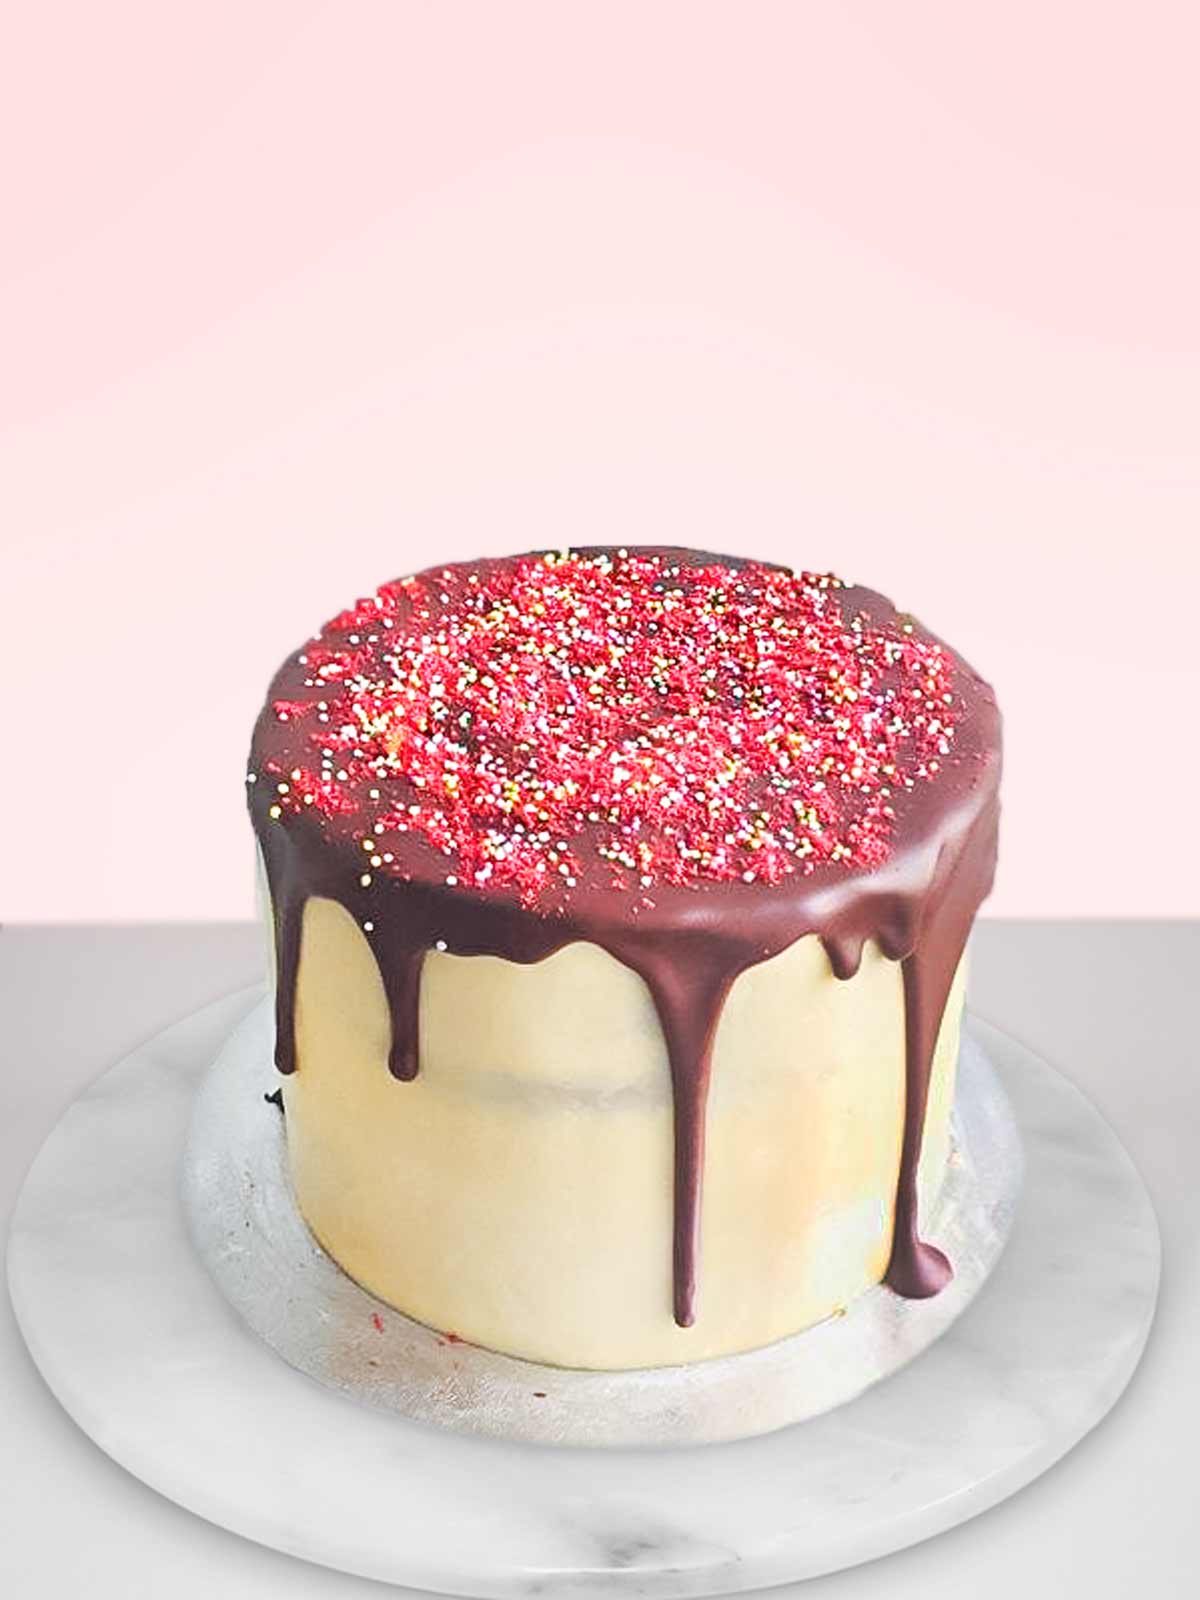 Party Red Velvet Cake